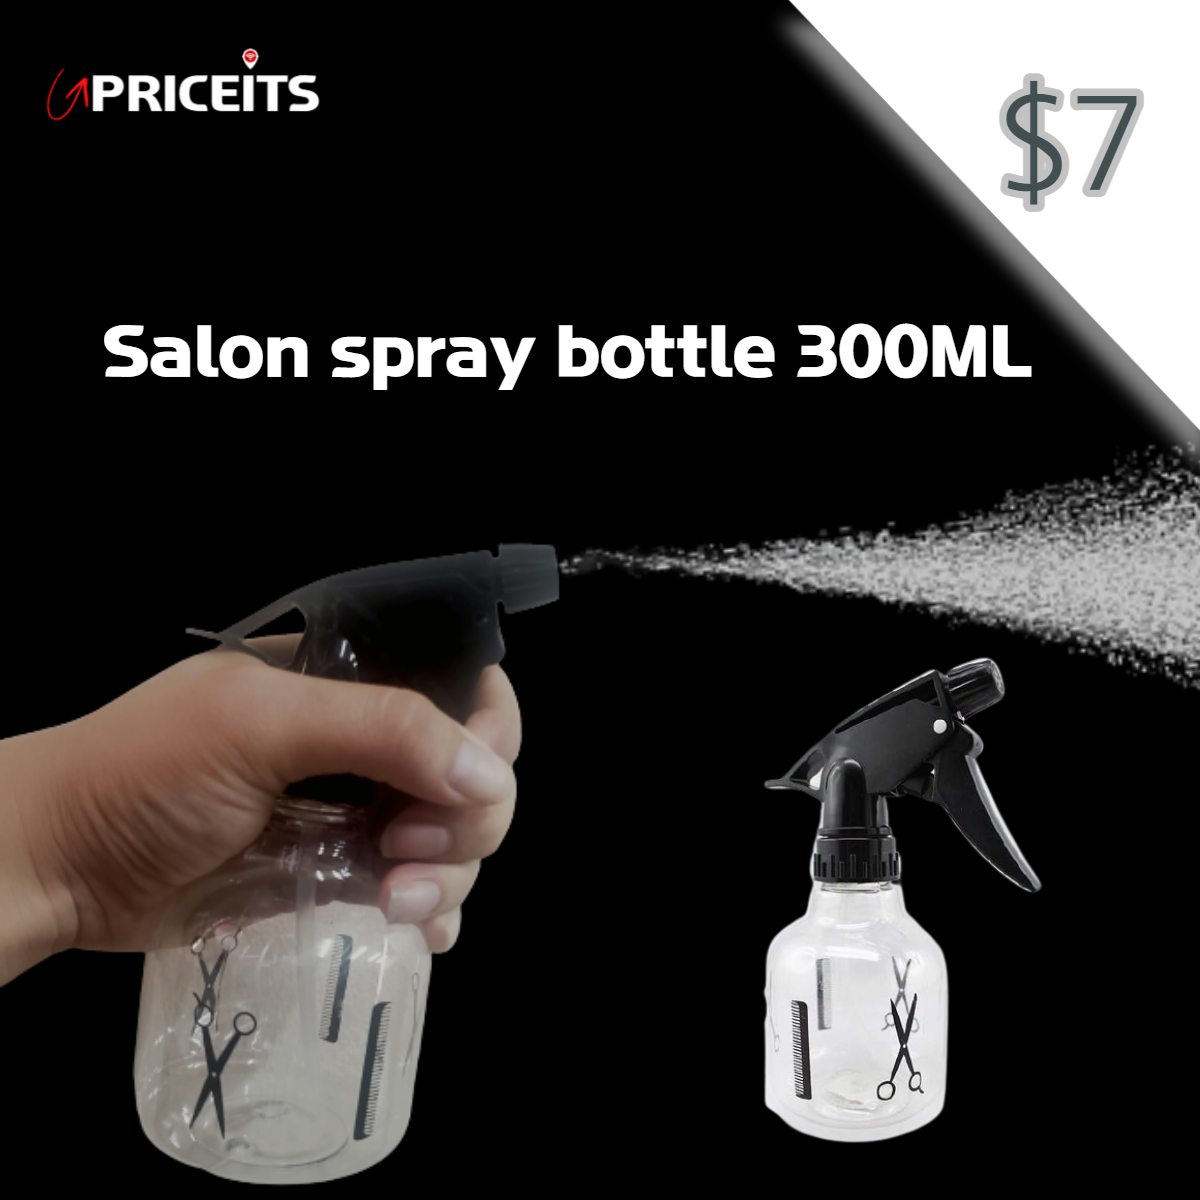 Salon spray bottle 300ML